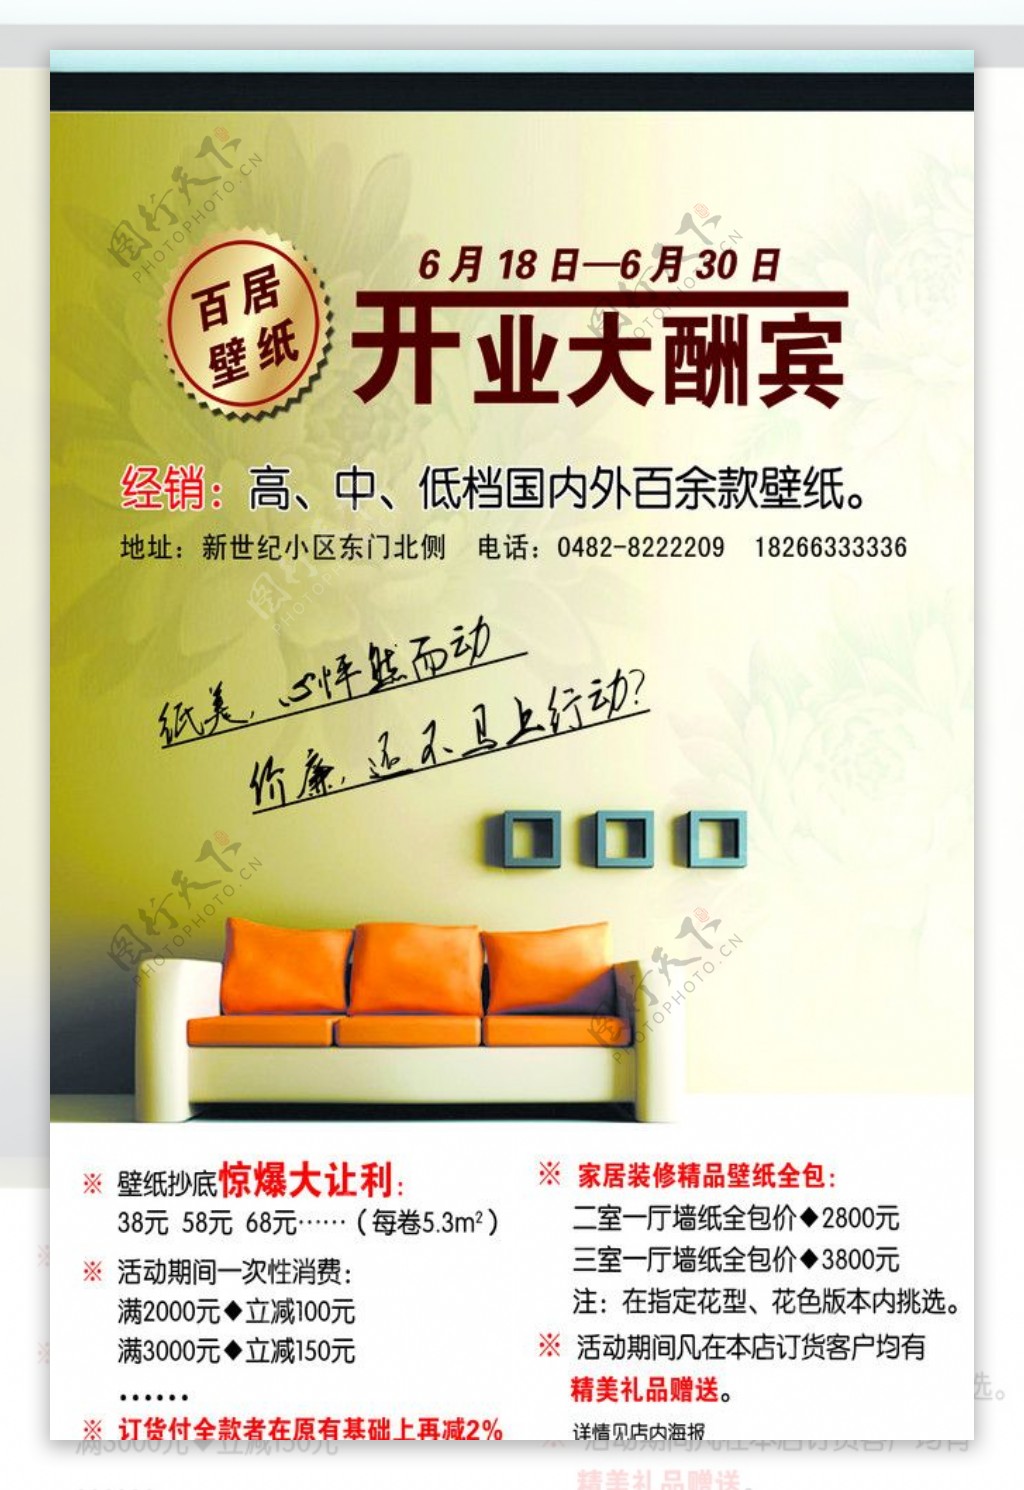 百居壁纸开业宣传广告图片